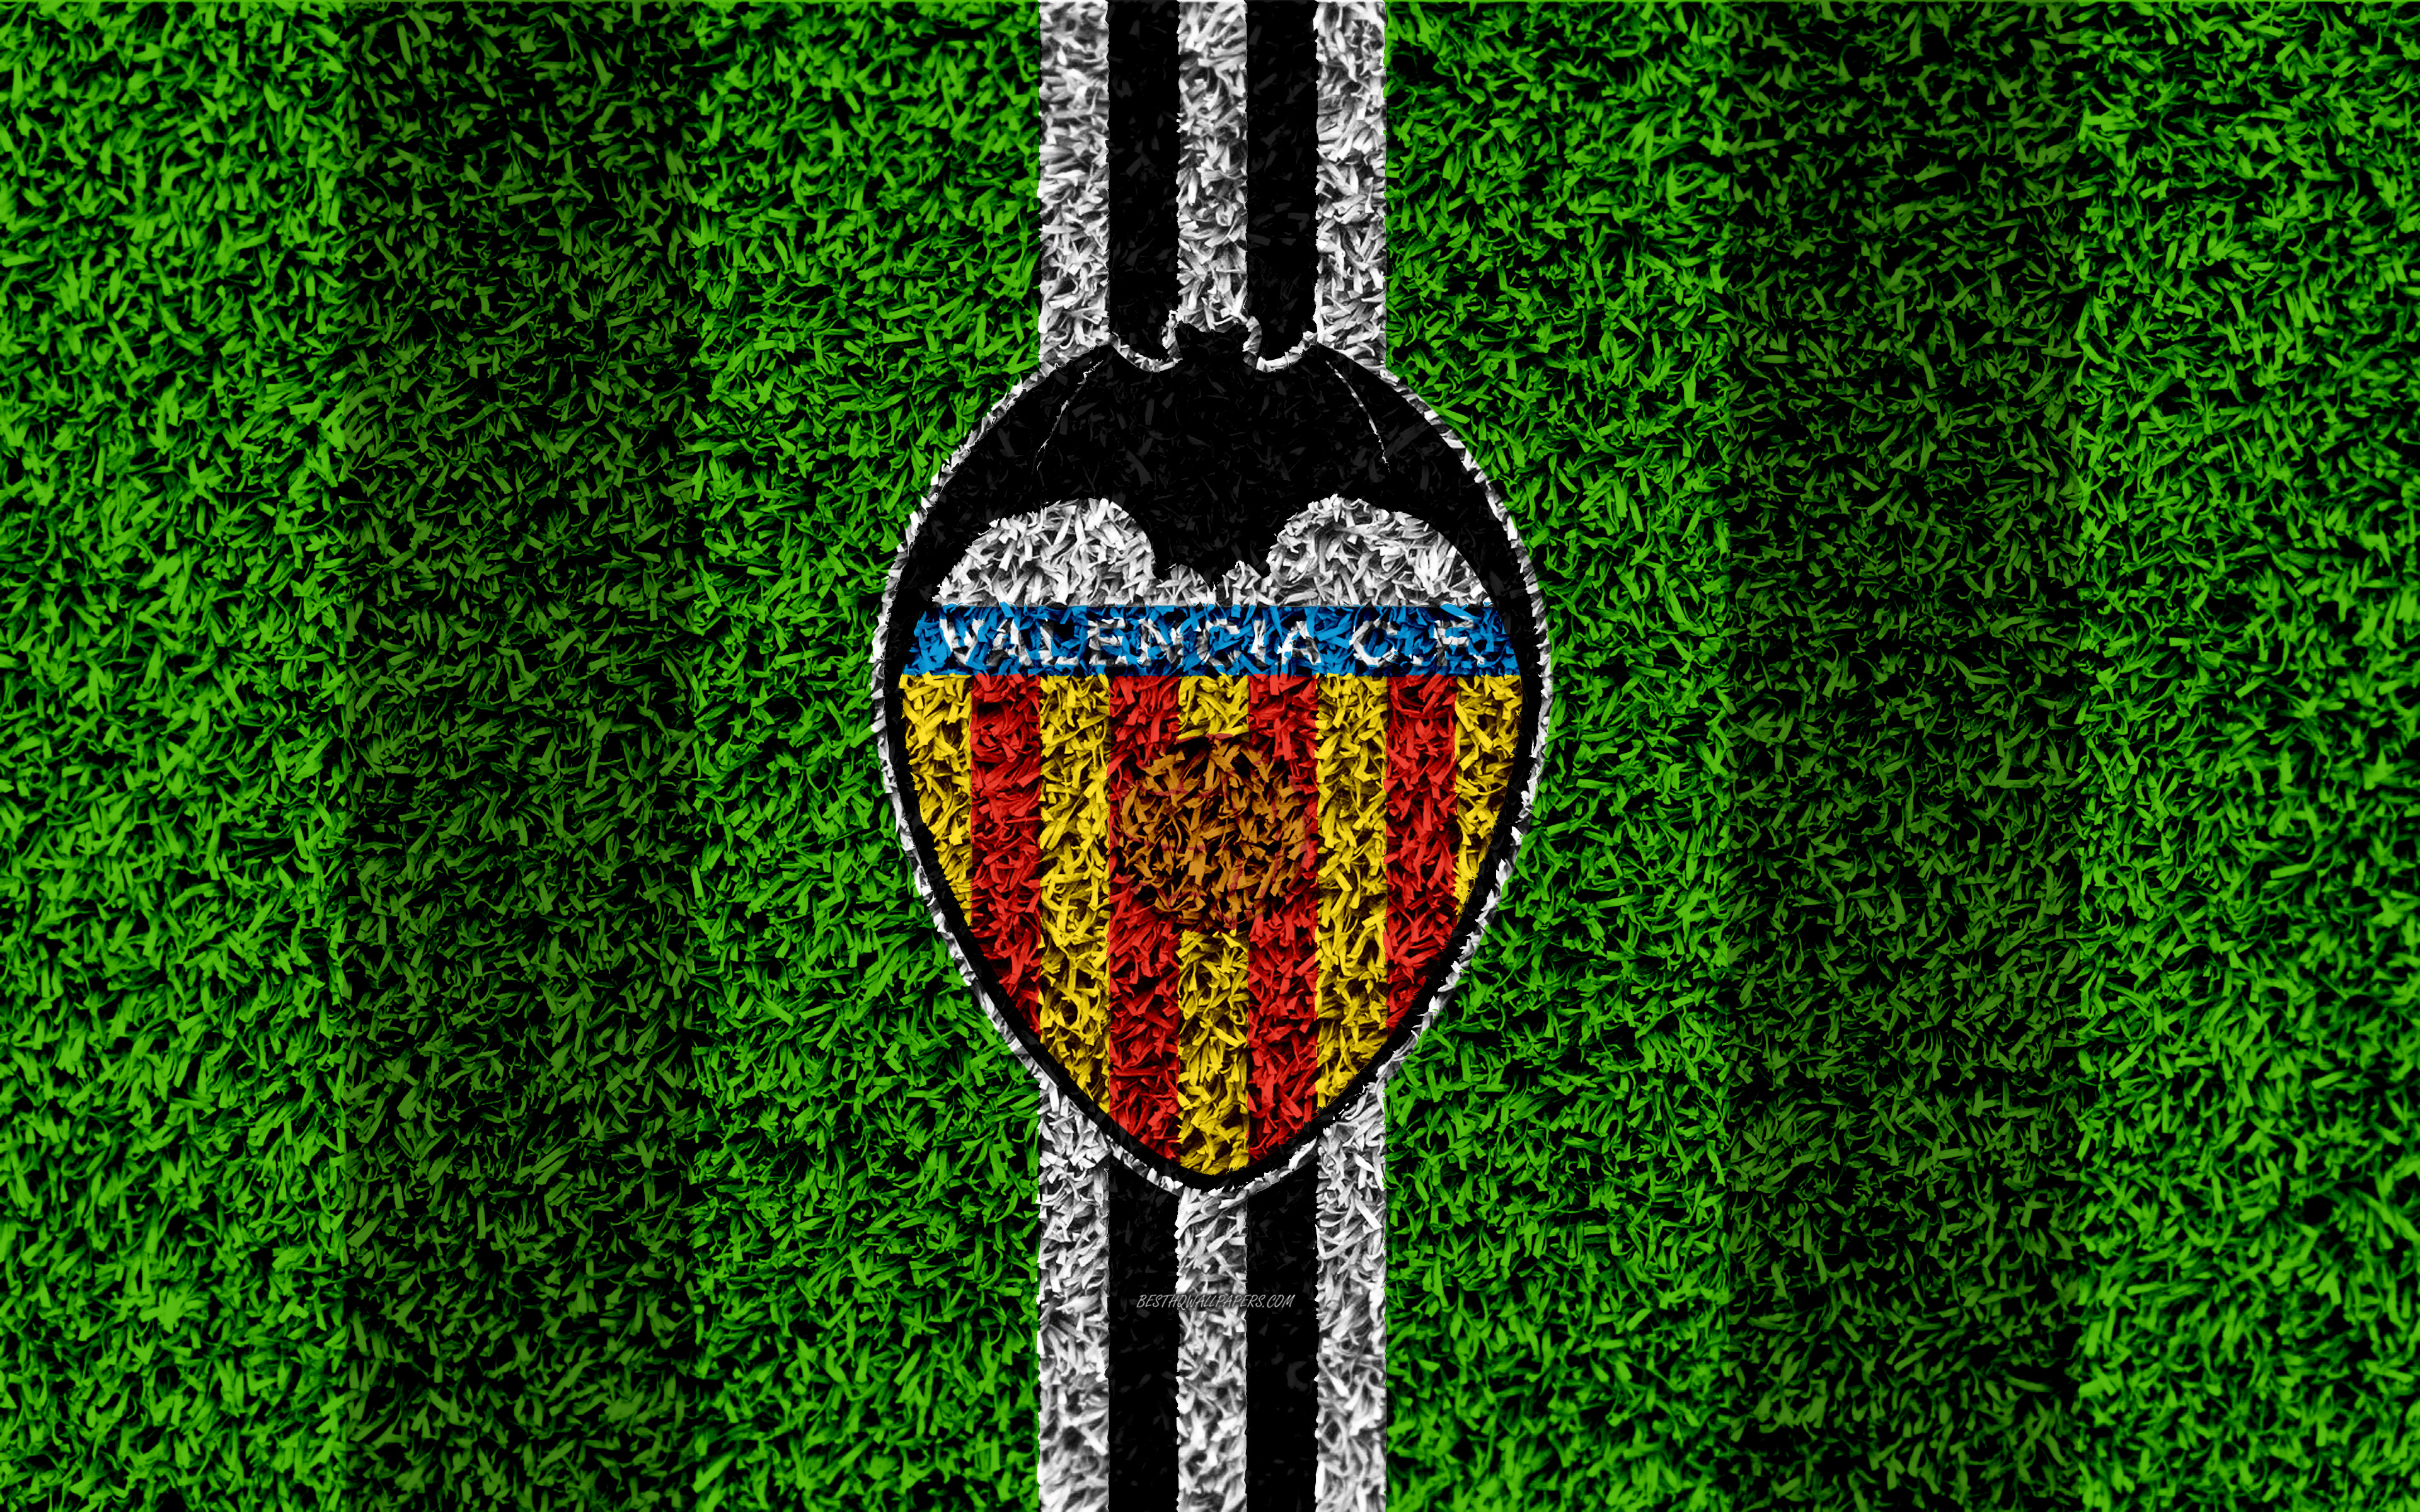 PCデスクトップにスポーツ, サッカー, ロゴ, 象徴, バレンシアCf画像を無料でダウンロード